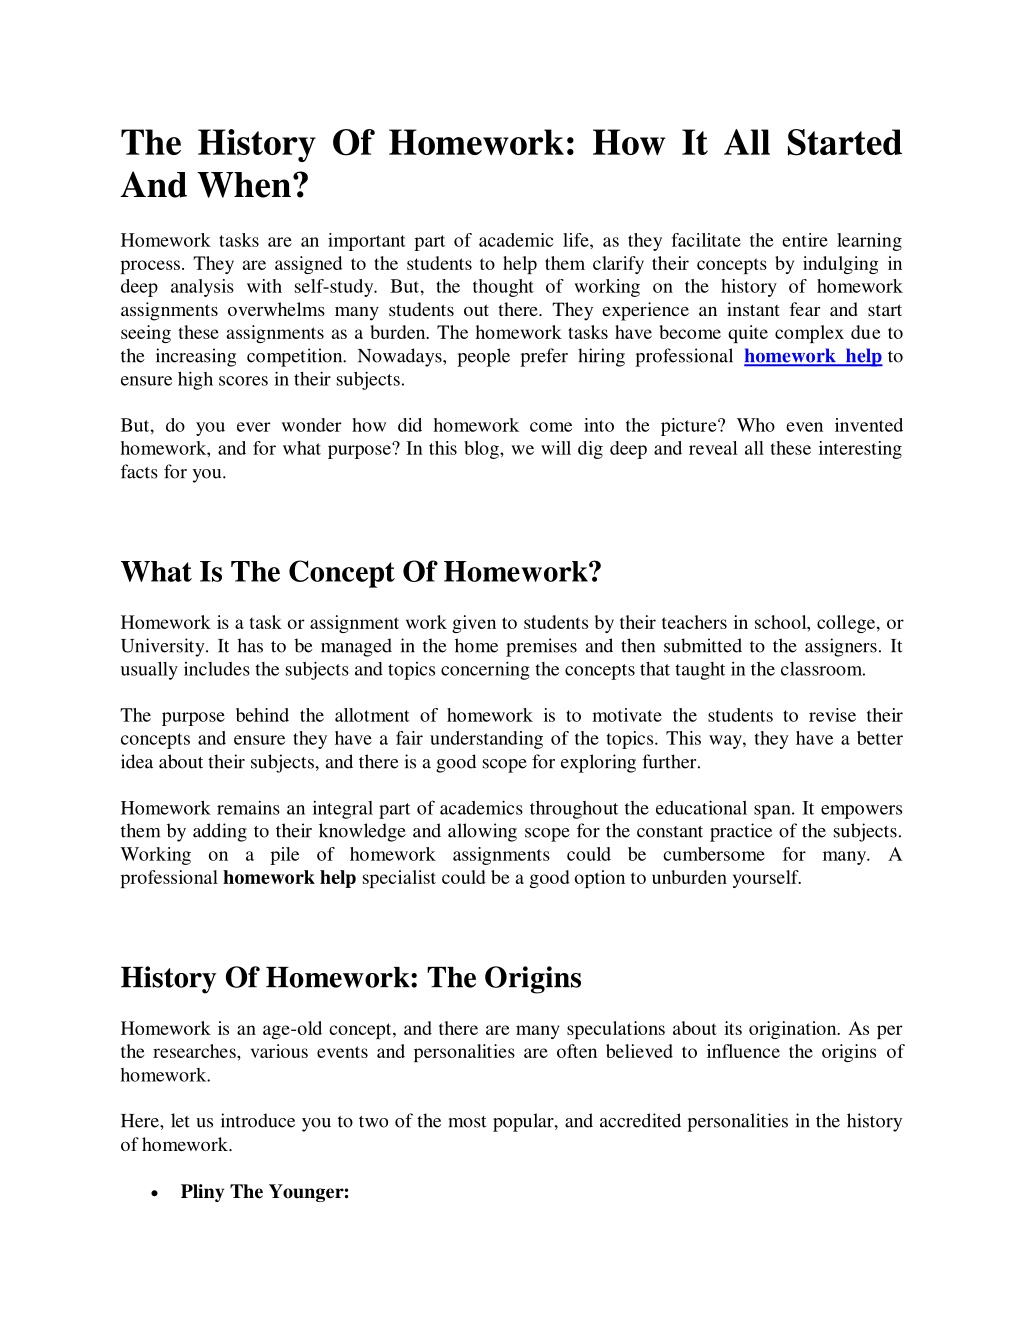 origin of homework